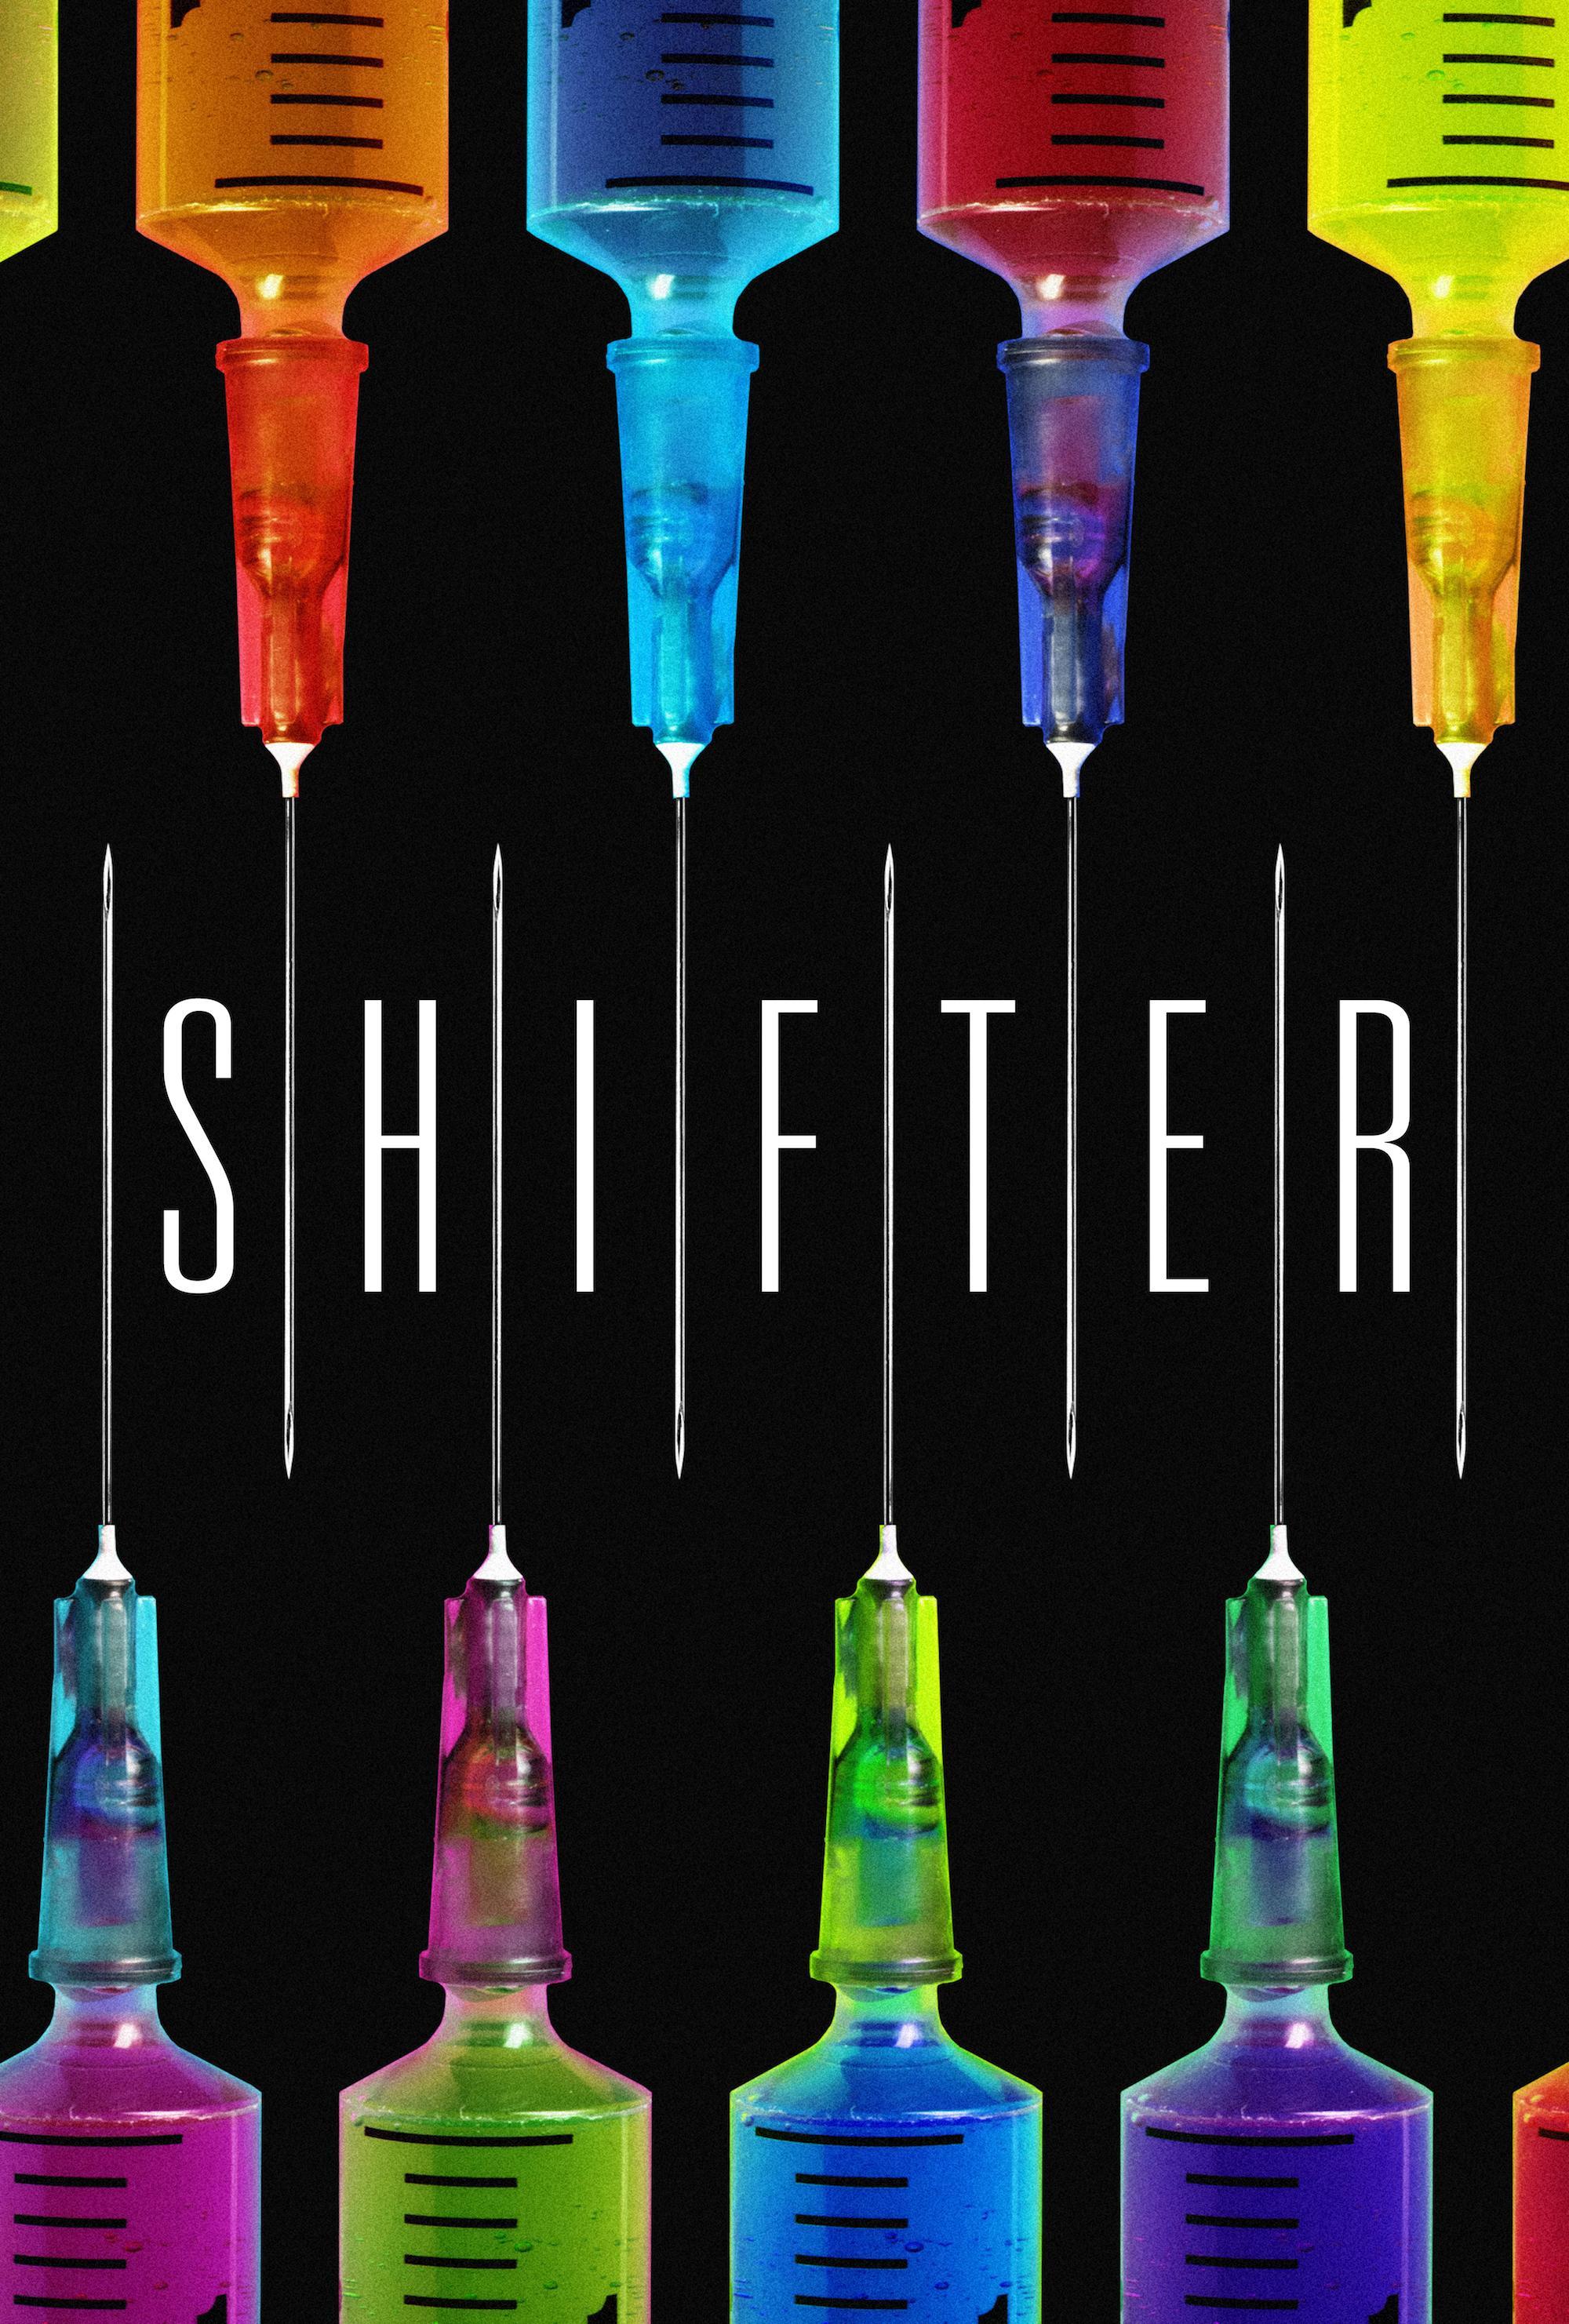 Постер фильма Метаморф | Shifter